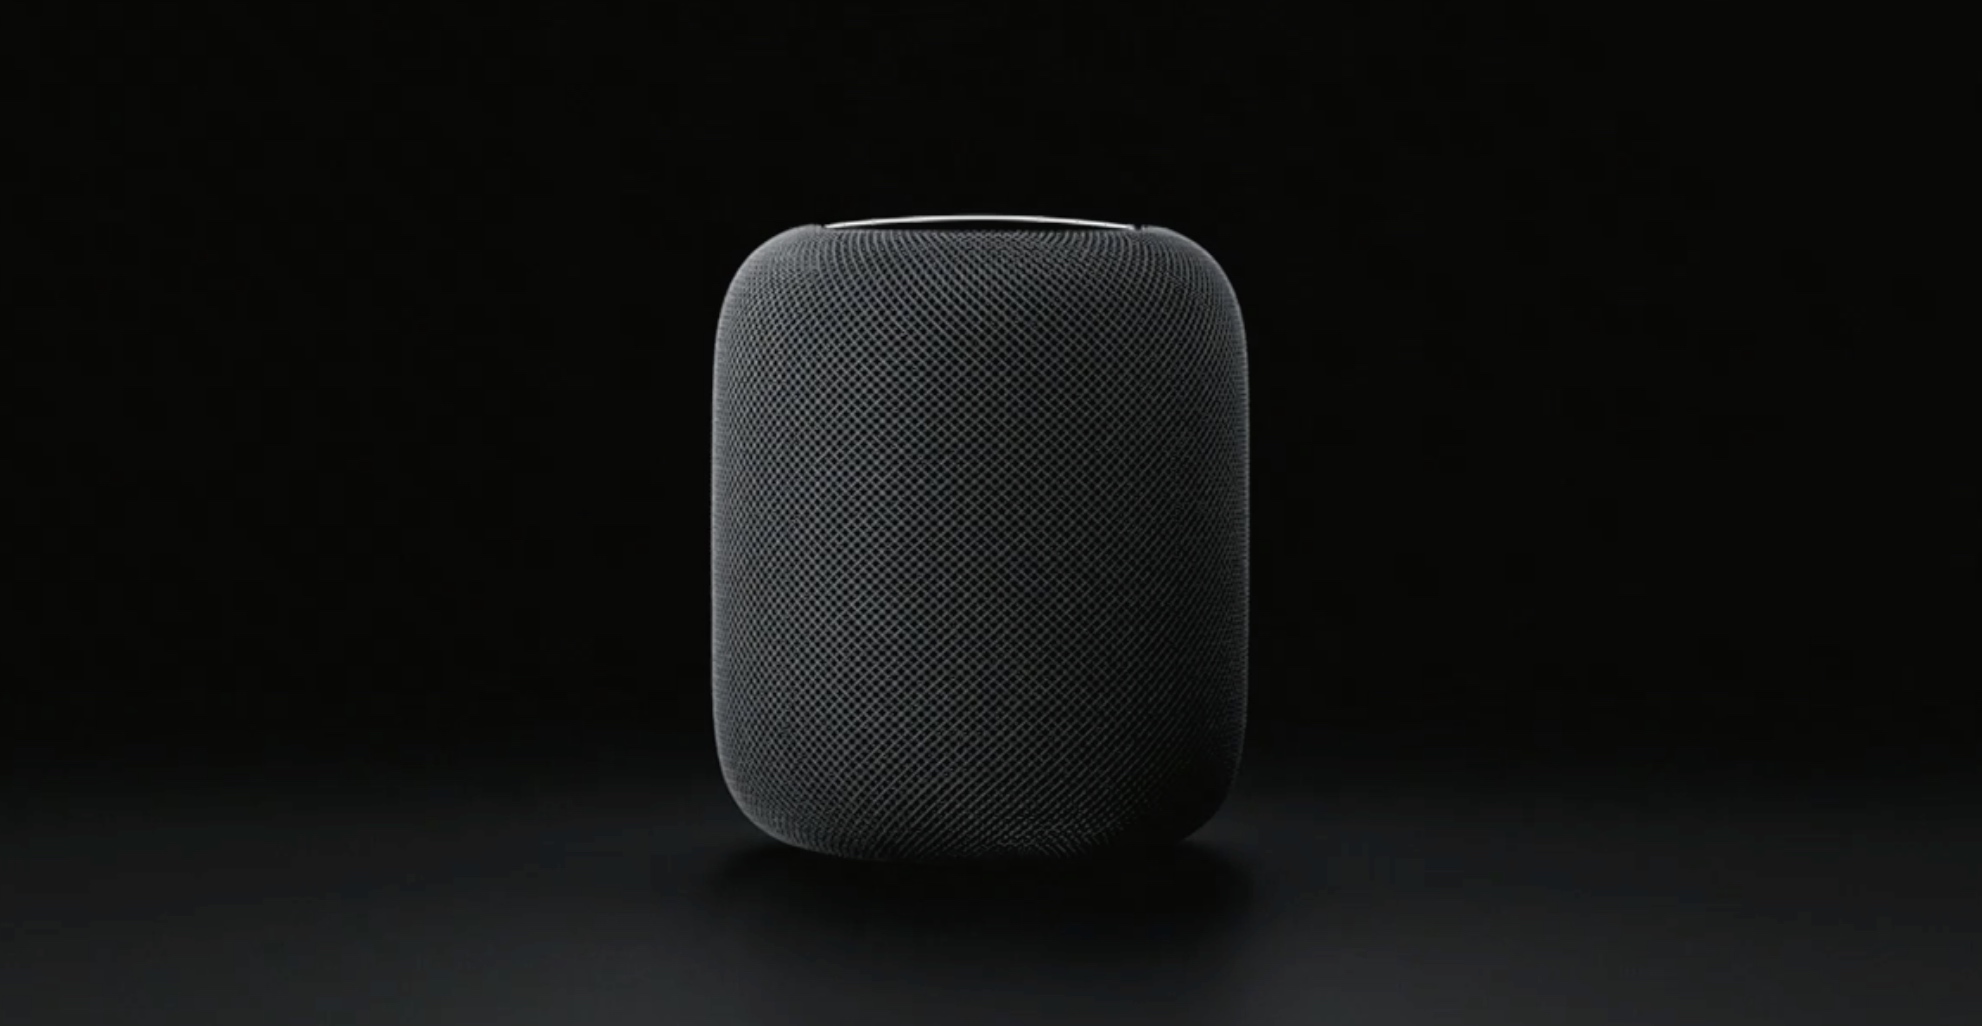 Avec&nbsp;HomePod, Apple a voulu se rapprocher d’un design renvoyant à l’univers de la hi-fi plus qu'à celui du gadget électronique. © Apple